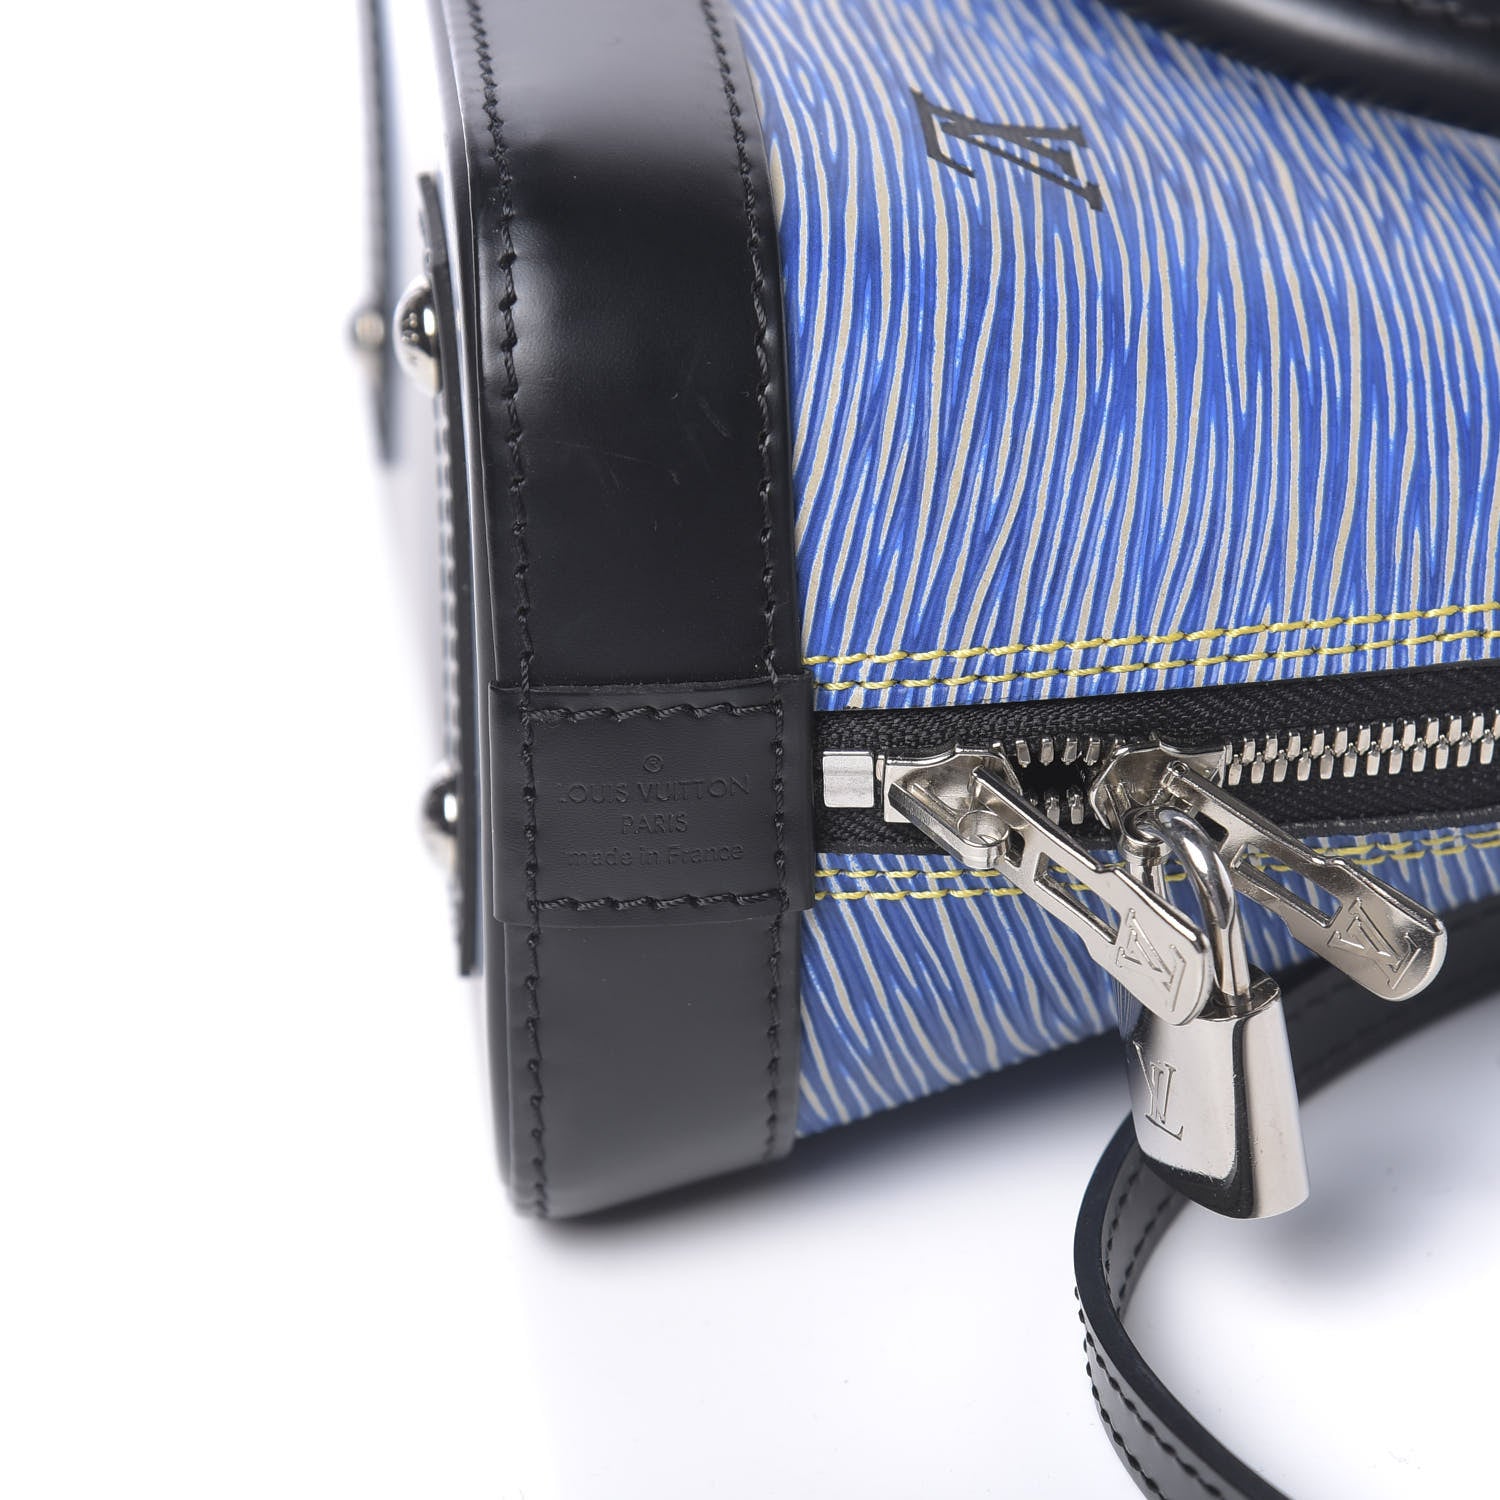 Louis Vuitton Light Denim Epi Leather Limited Edition Petite Malle Bag  Louis Vuitton | The Luxury Closet